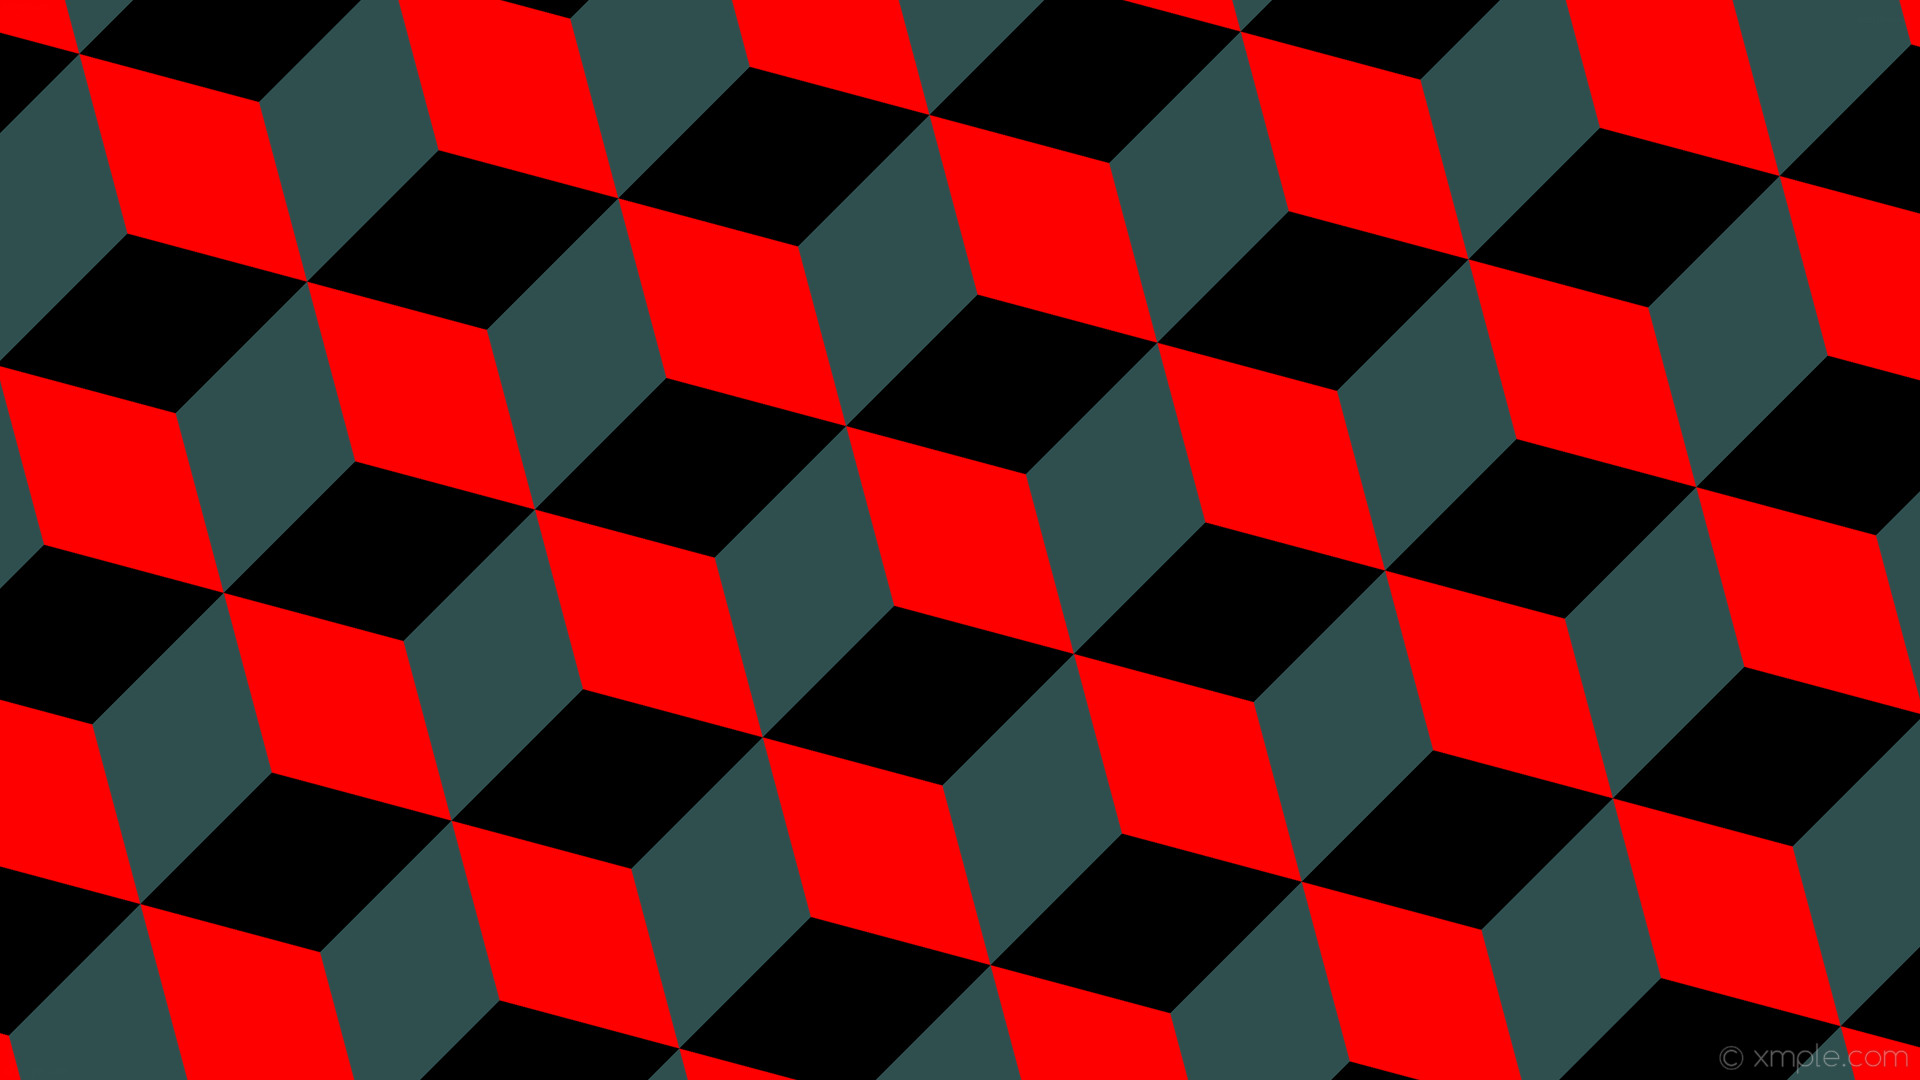 1920x1080 wallpaper grey 3d cubes red black dark slate gray #ff0000 #2f4f4f #000000  315